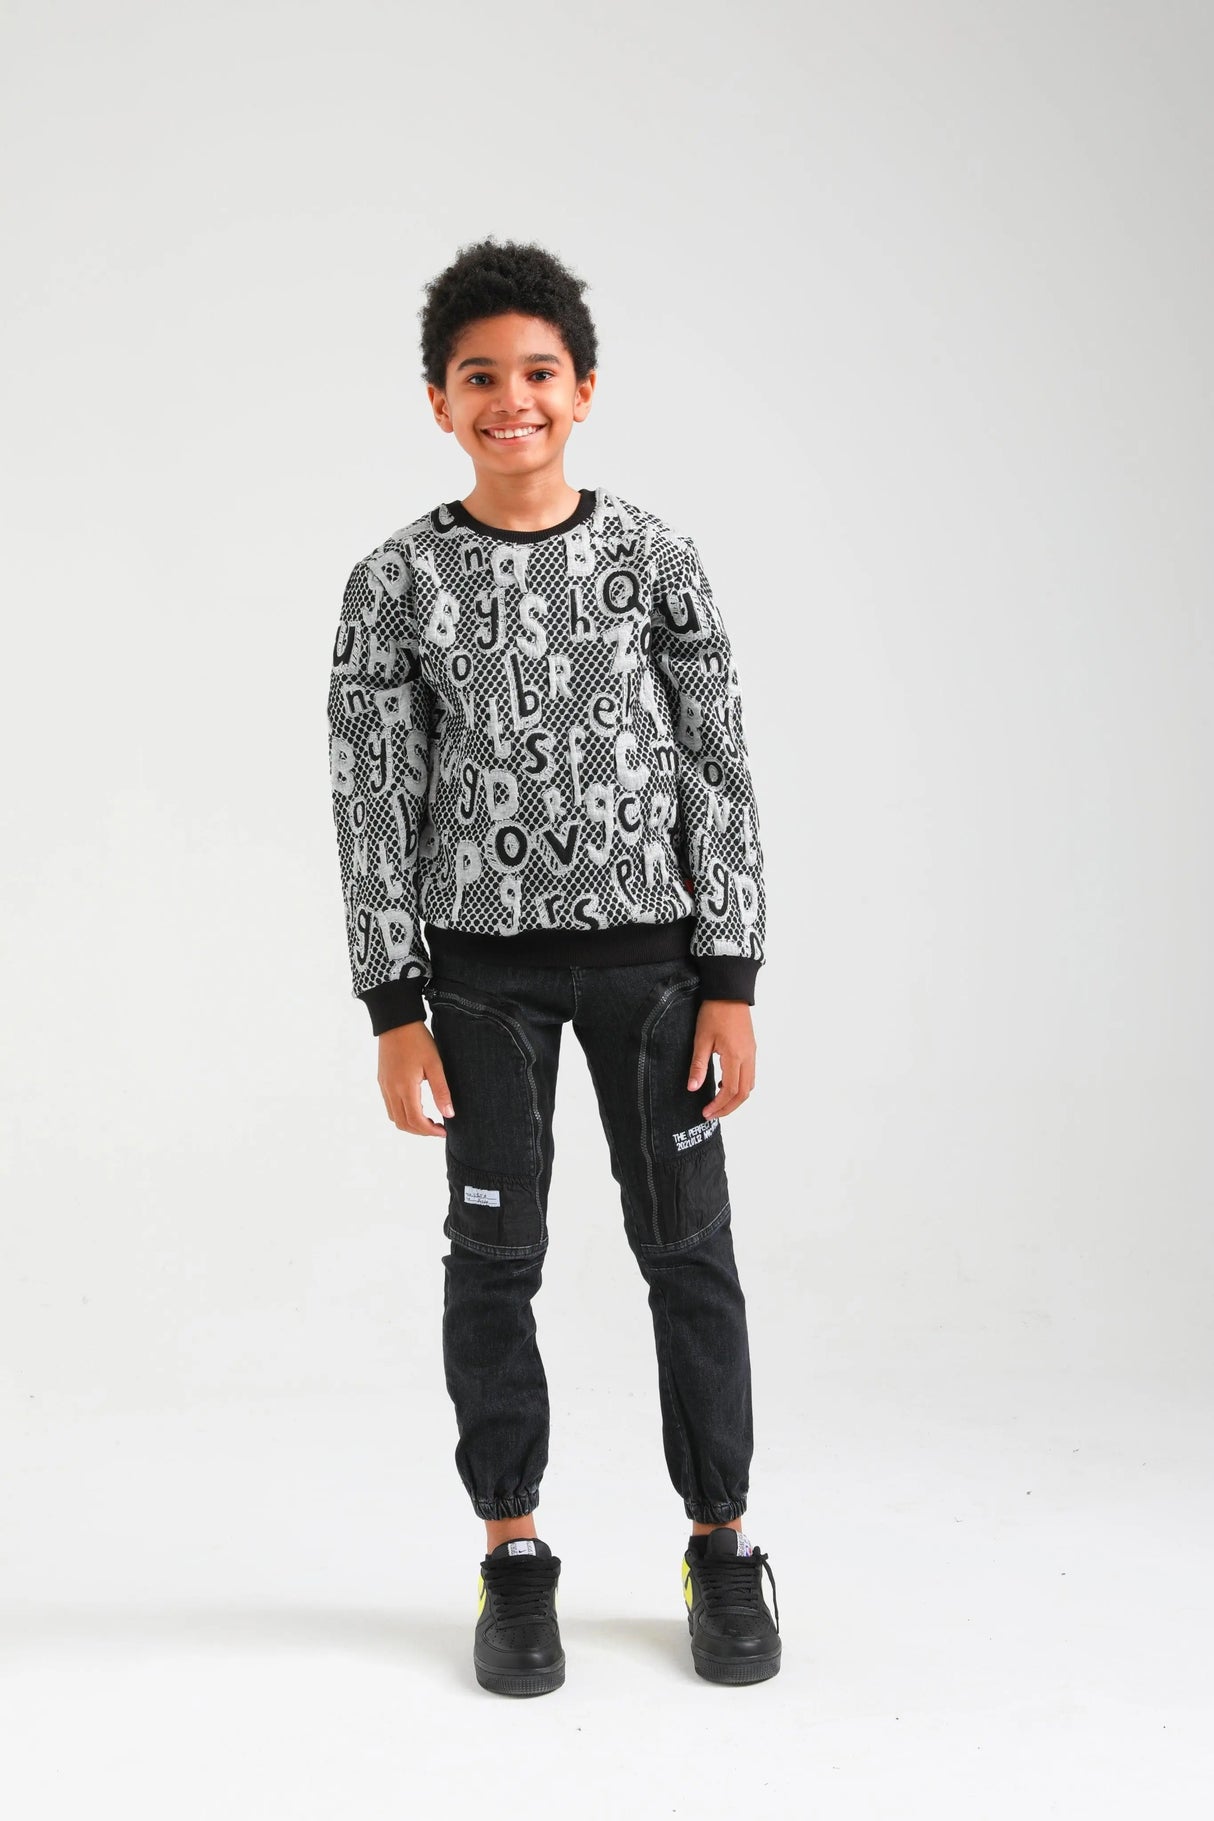 Nanica Siyah boy sweater - Jenni Kidz